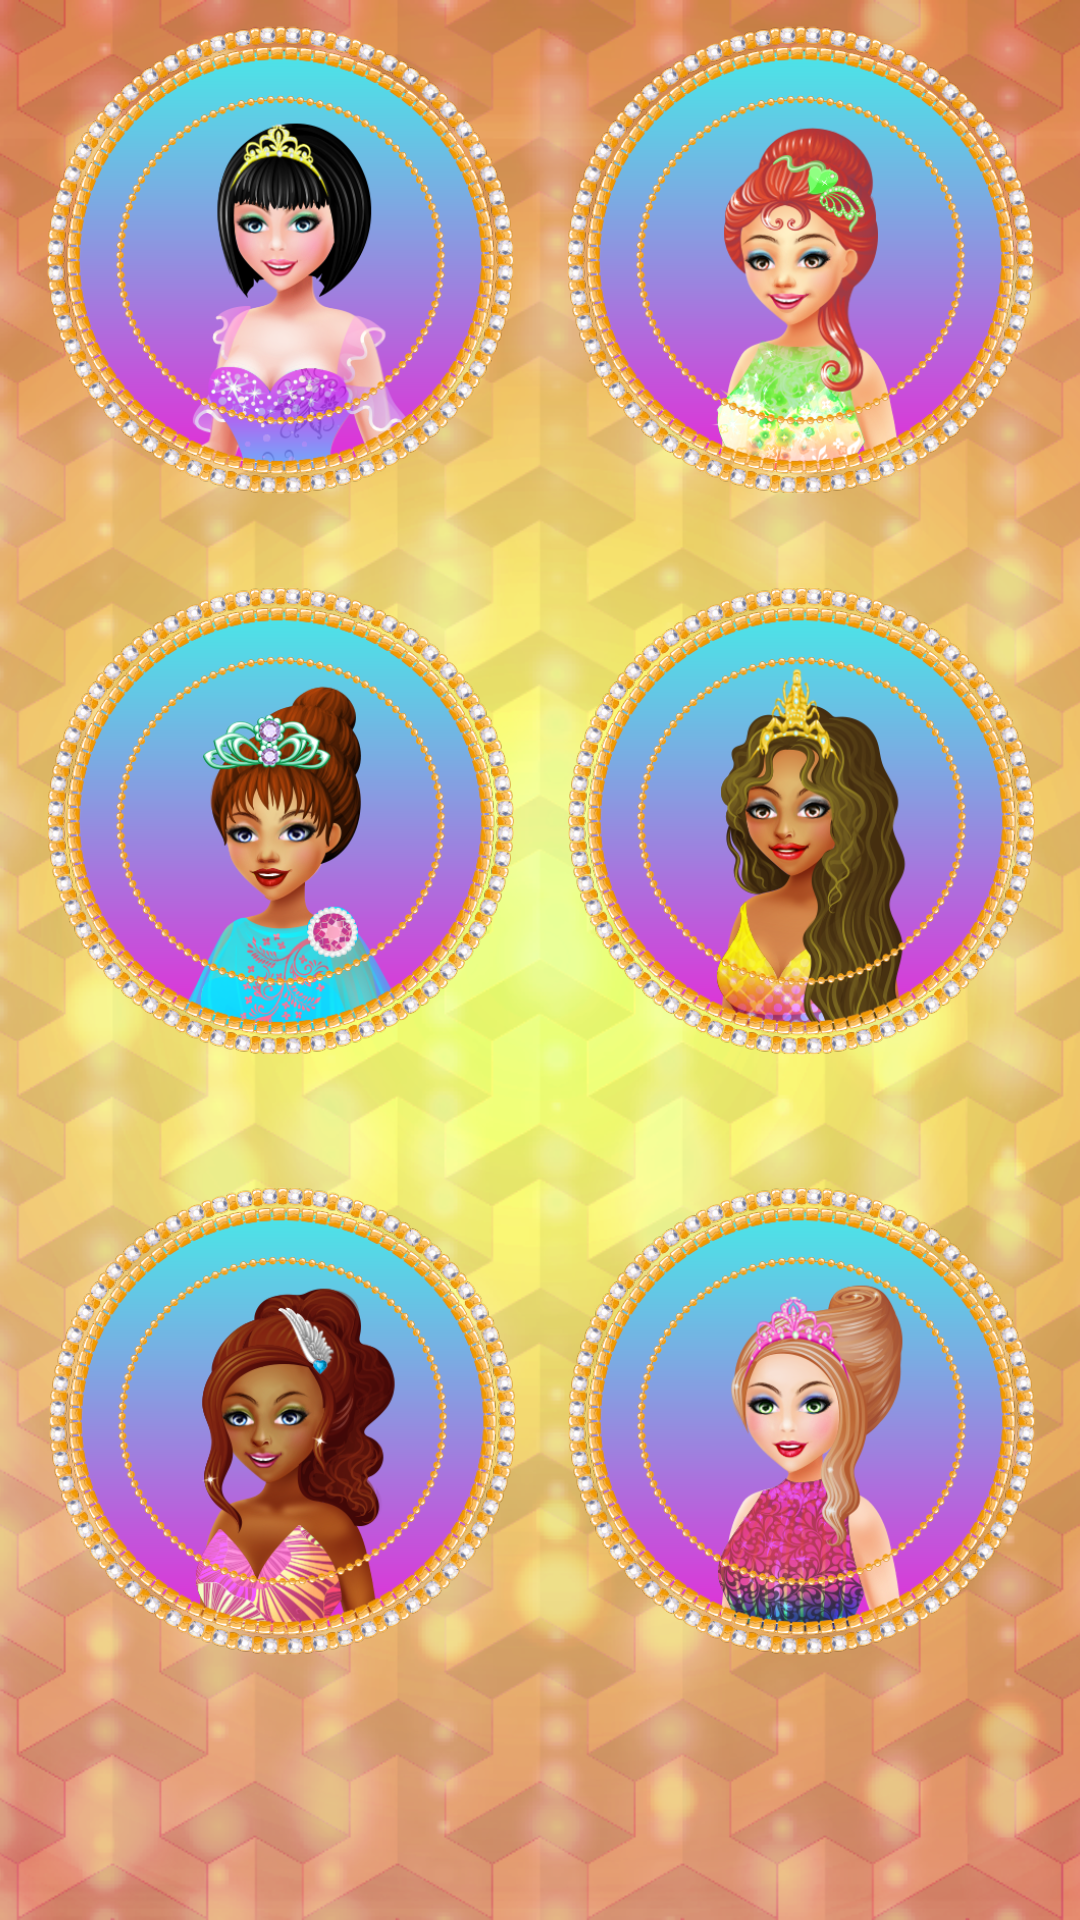 Screenshot 1 of Trò chơi mặc quần áo cho Girls: 6 cô gái mặc quần áo 1.3